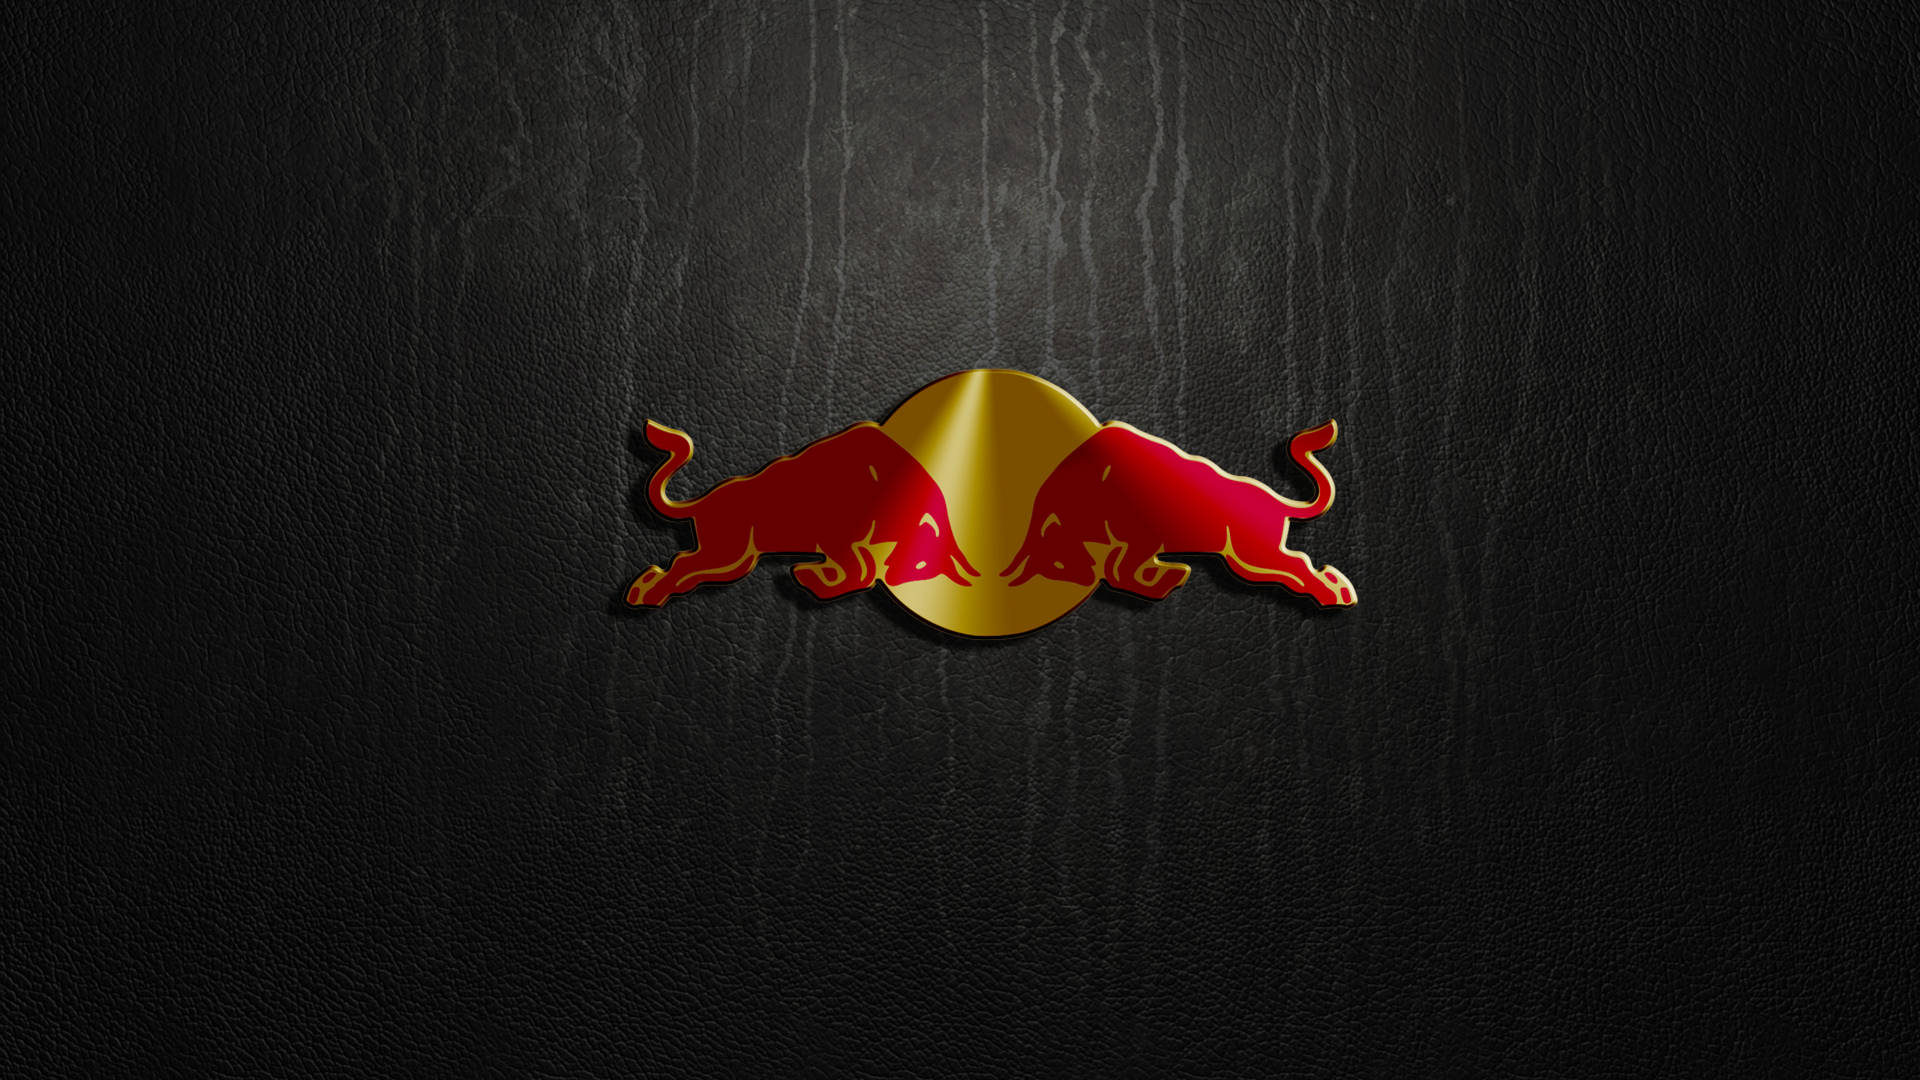 Red Bull Minimalist Wallpaper